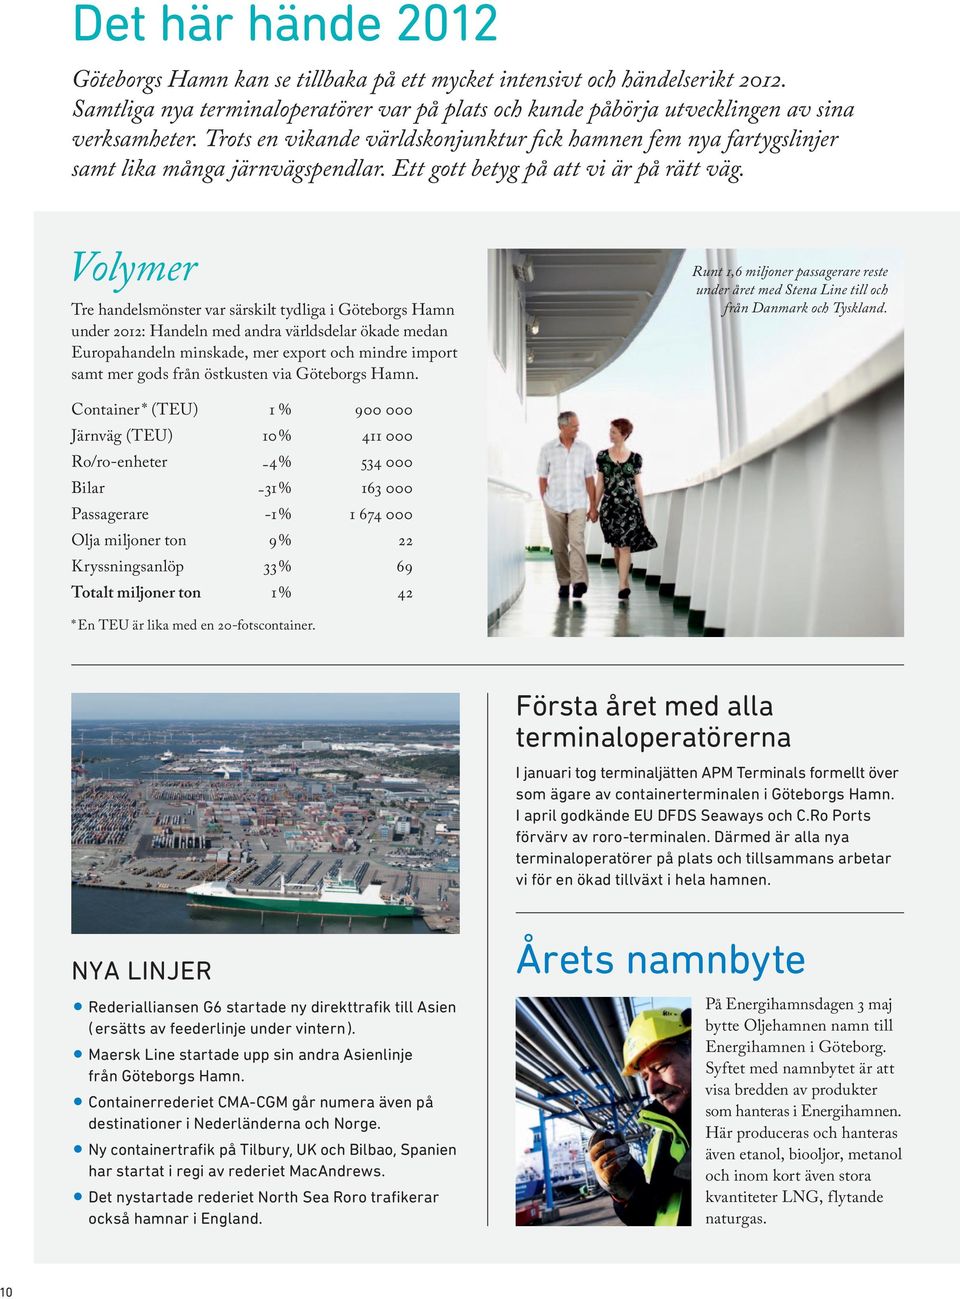 Volymer Tre handelsmönster var särskilt tydliga i Göteborgs Hamn under 2012: Handeln med andra världsdelar ökade medan Europahandeln minskade, mer export och mindre import samt mer gods från